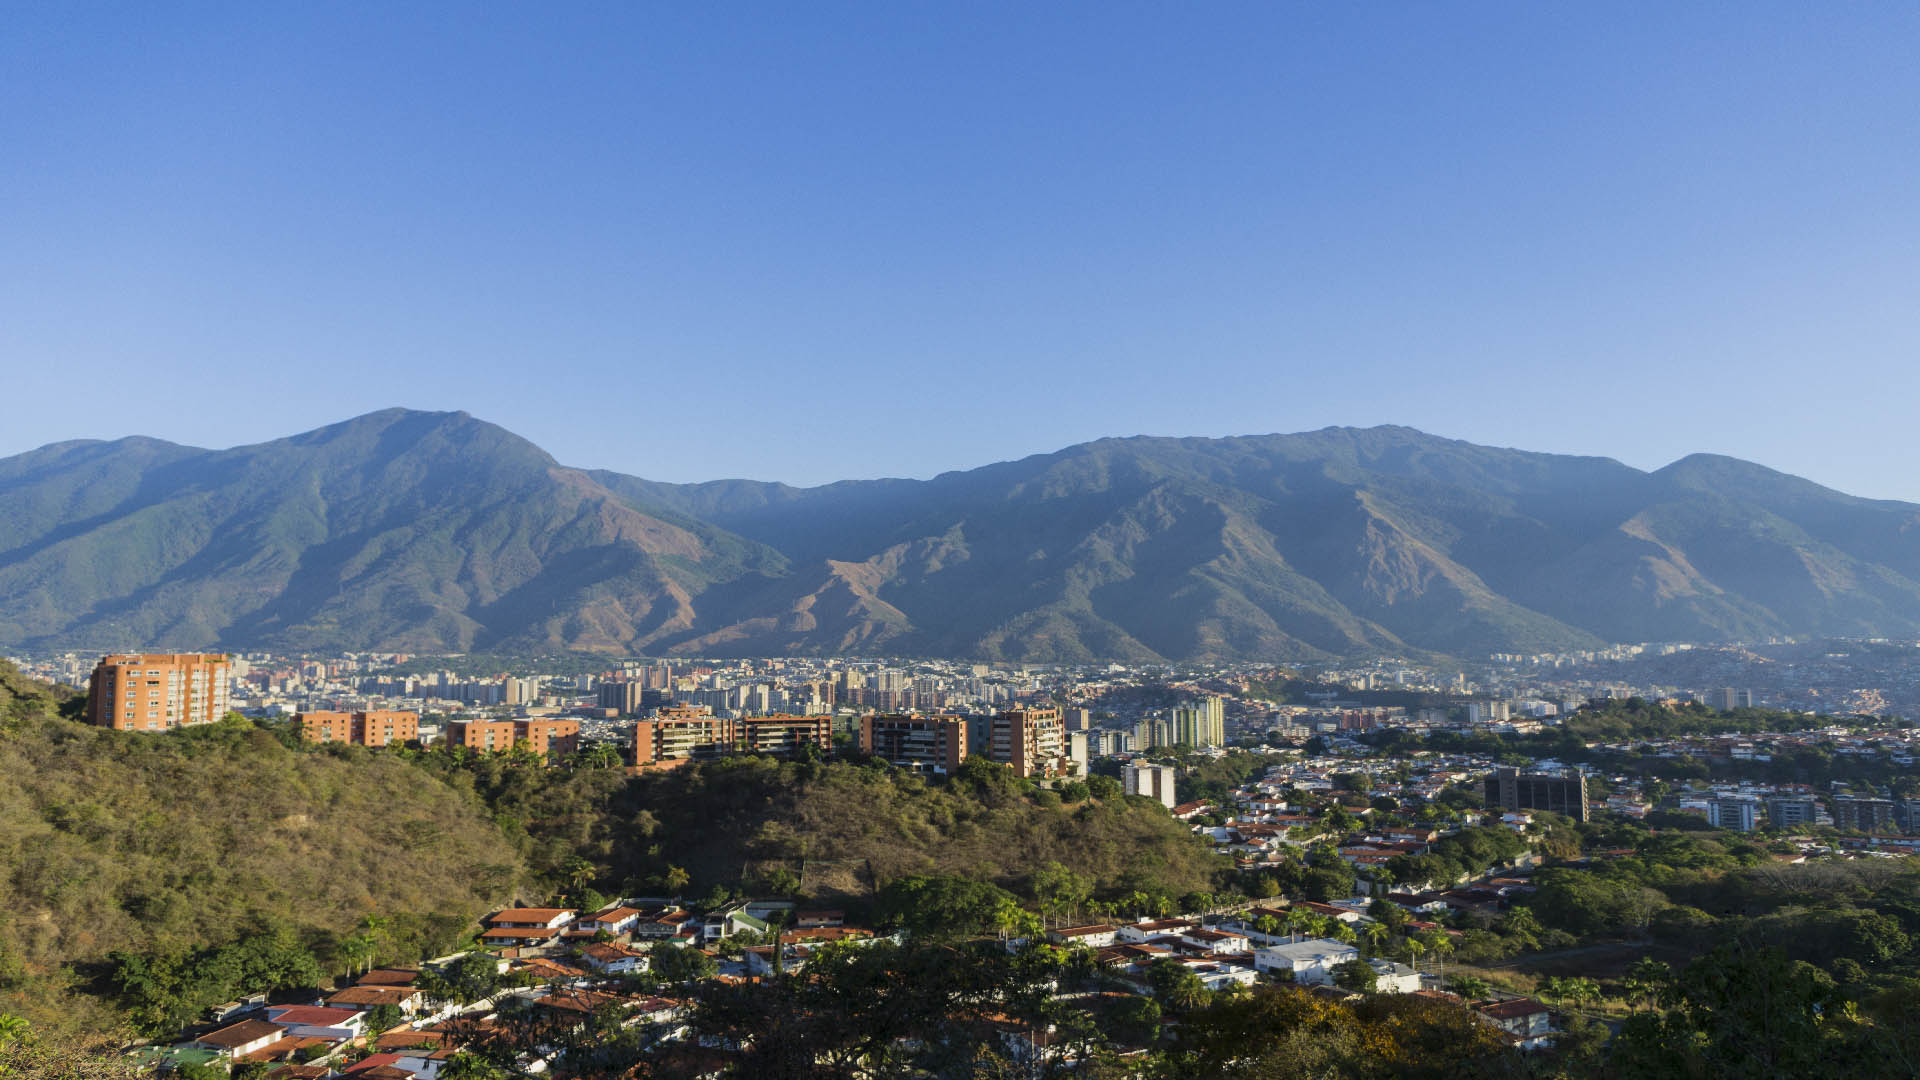 Caracas fundada por Diego de Losada el 25 de julio de 1567 en honor al día de Santiago, santo patrón de España.